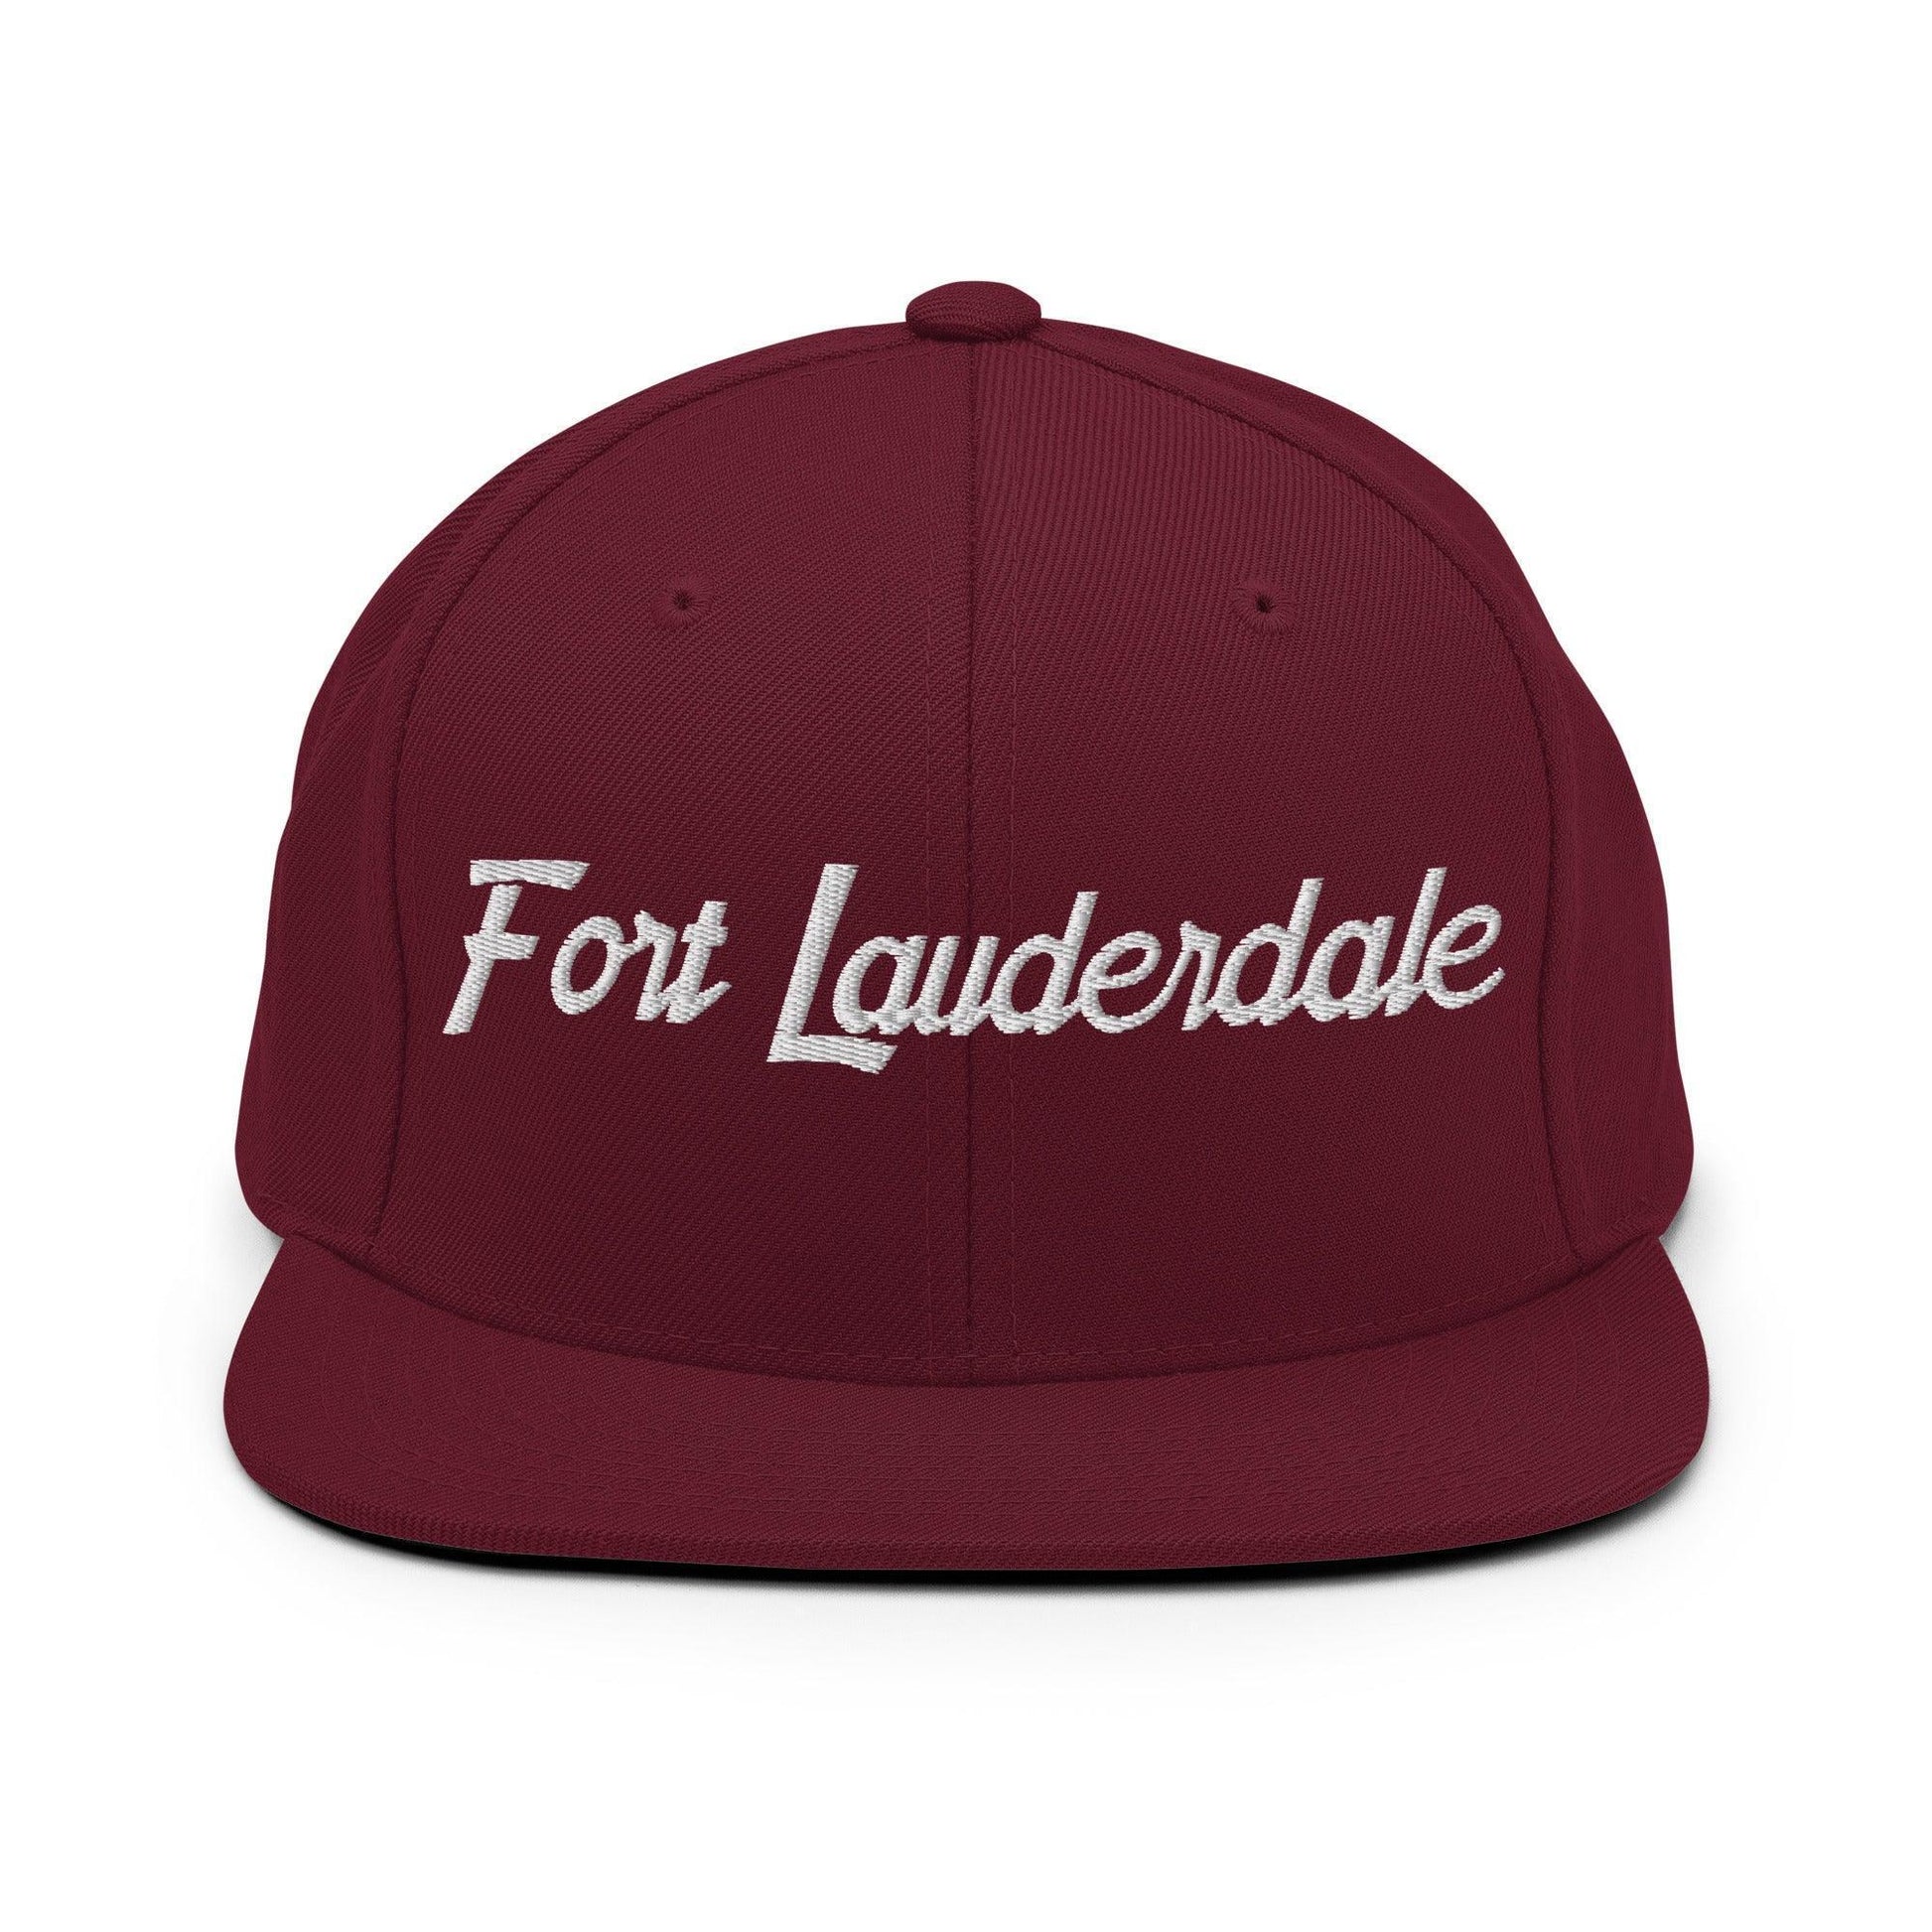 Fort Lauderdale Script Snapback Hat Maroon